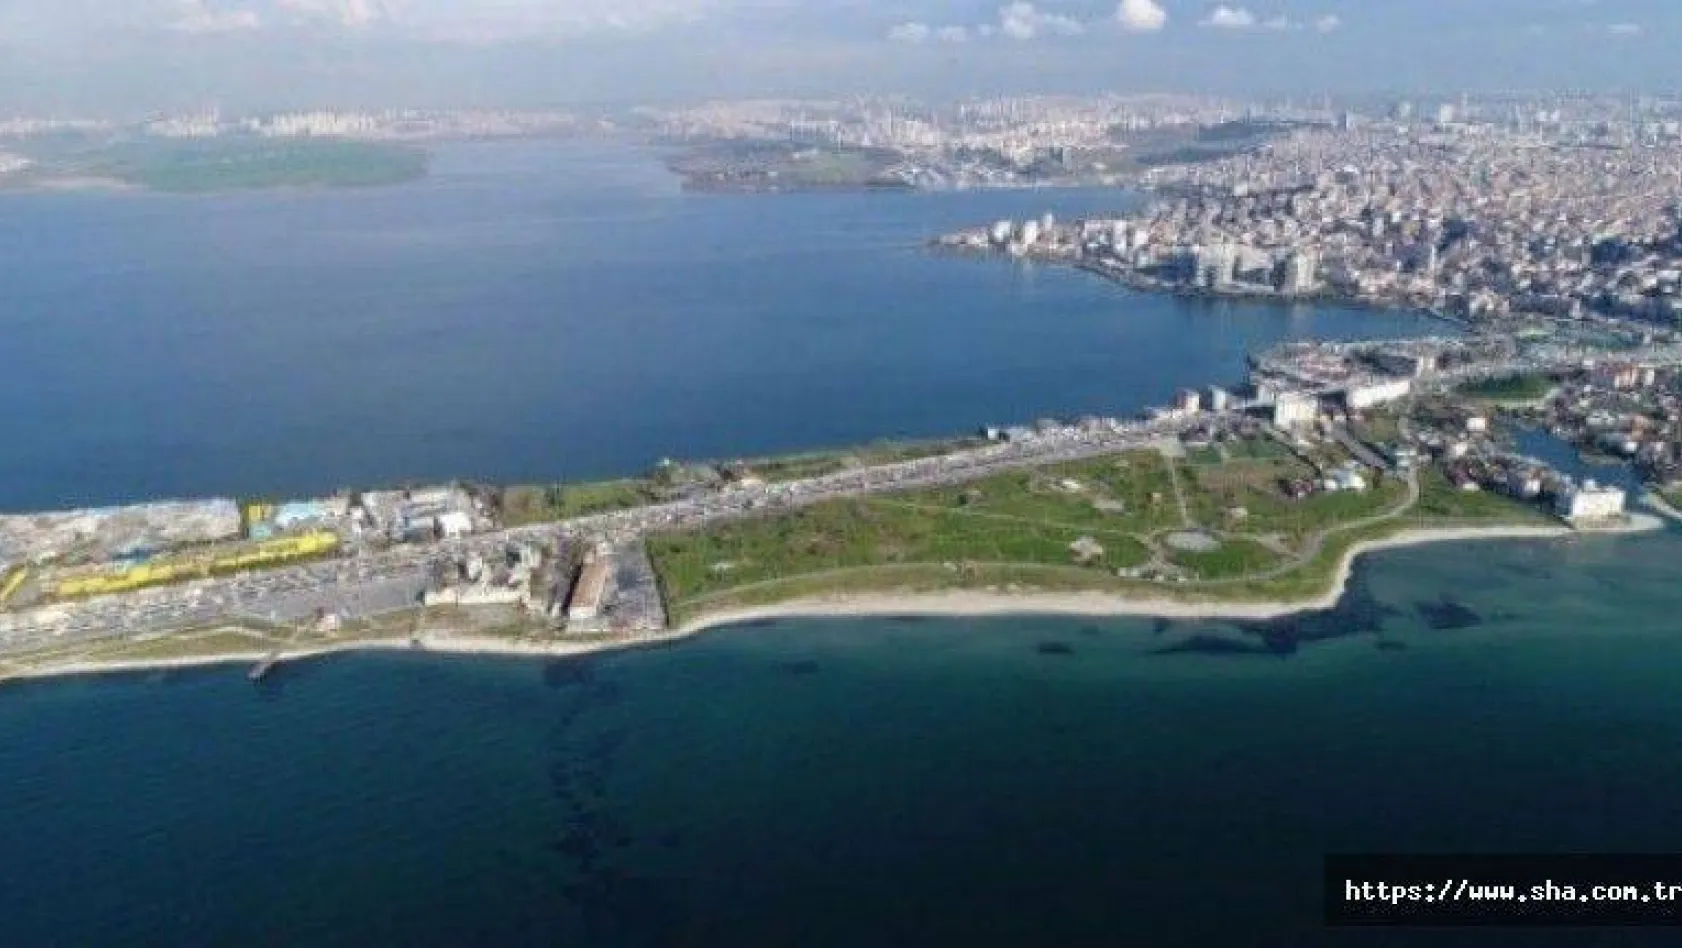 Büyükçekmece Kaymakamlığından 'Kanal İstanbul' iddialarına yanıt